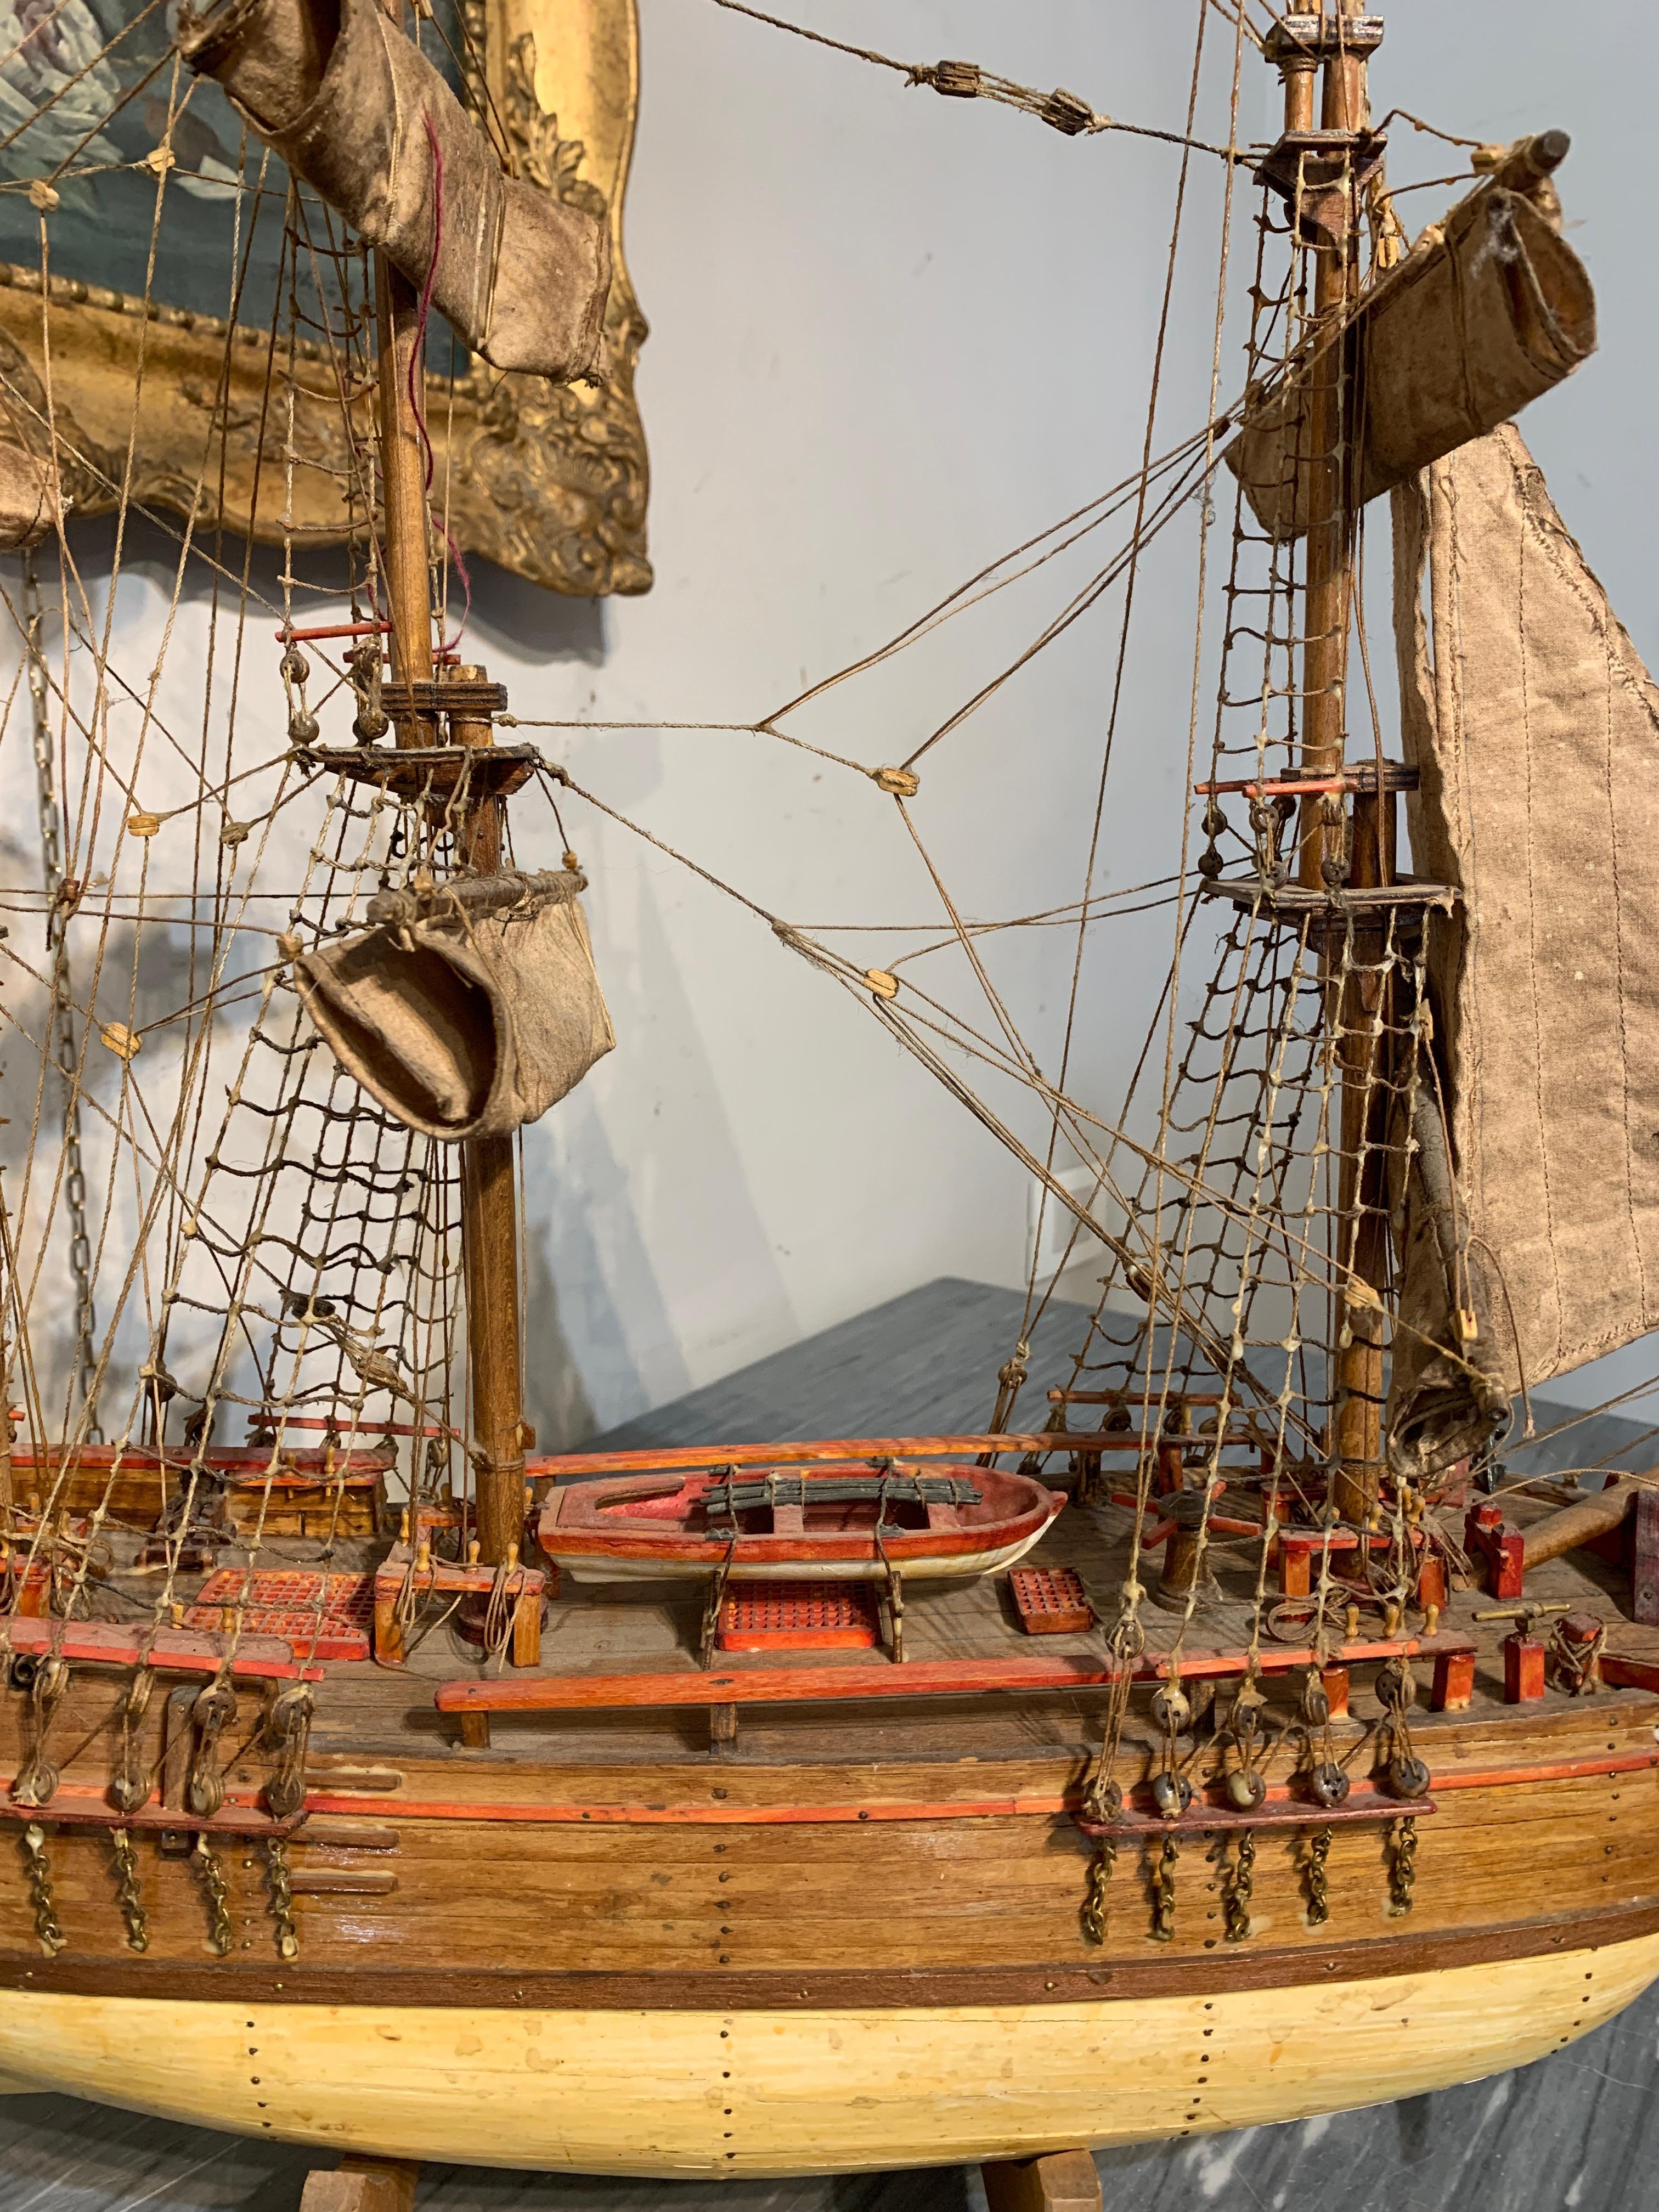 Kleines Modell eines Segelschiffs, das das berühmte englische Handelsschiff HMS Bounty darstellt. Das Modell und seine Details sind mit großer Sorgfalt und Raffinesse handgefertigt (Rettungsboot, Seile, Segel, Anker). Das Modell kann auf eine